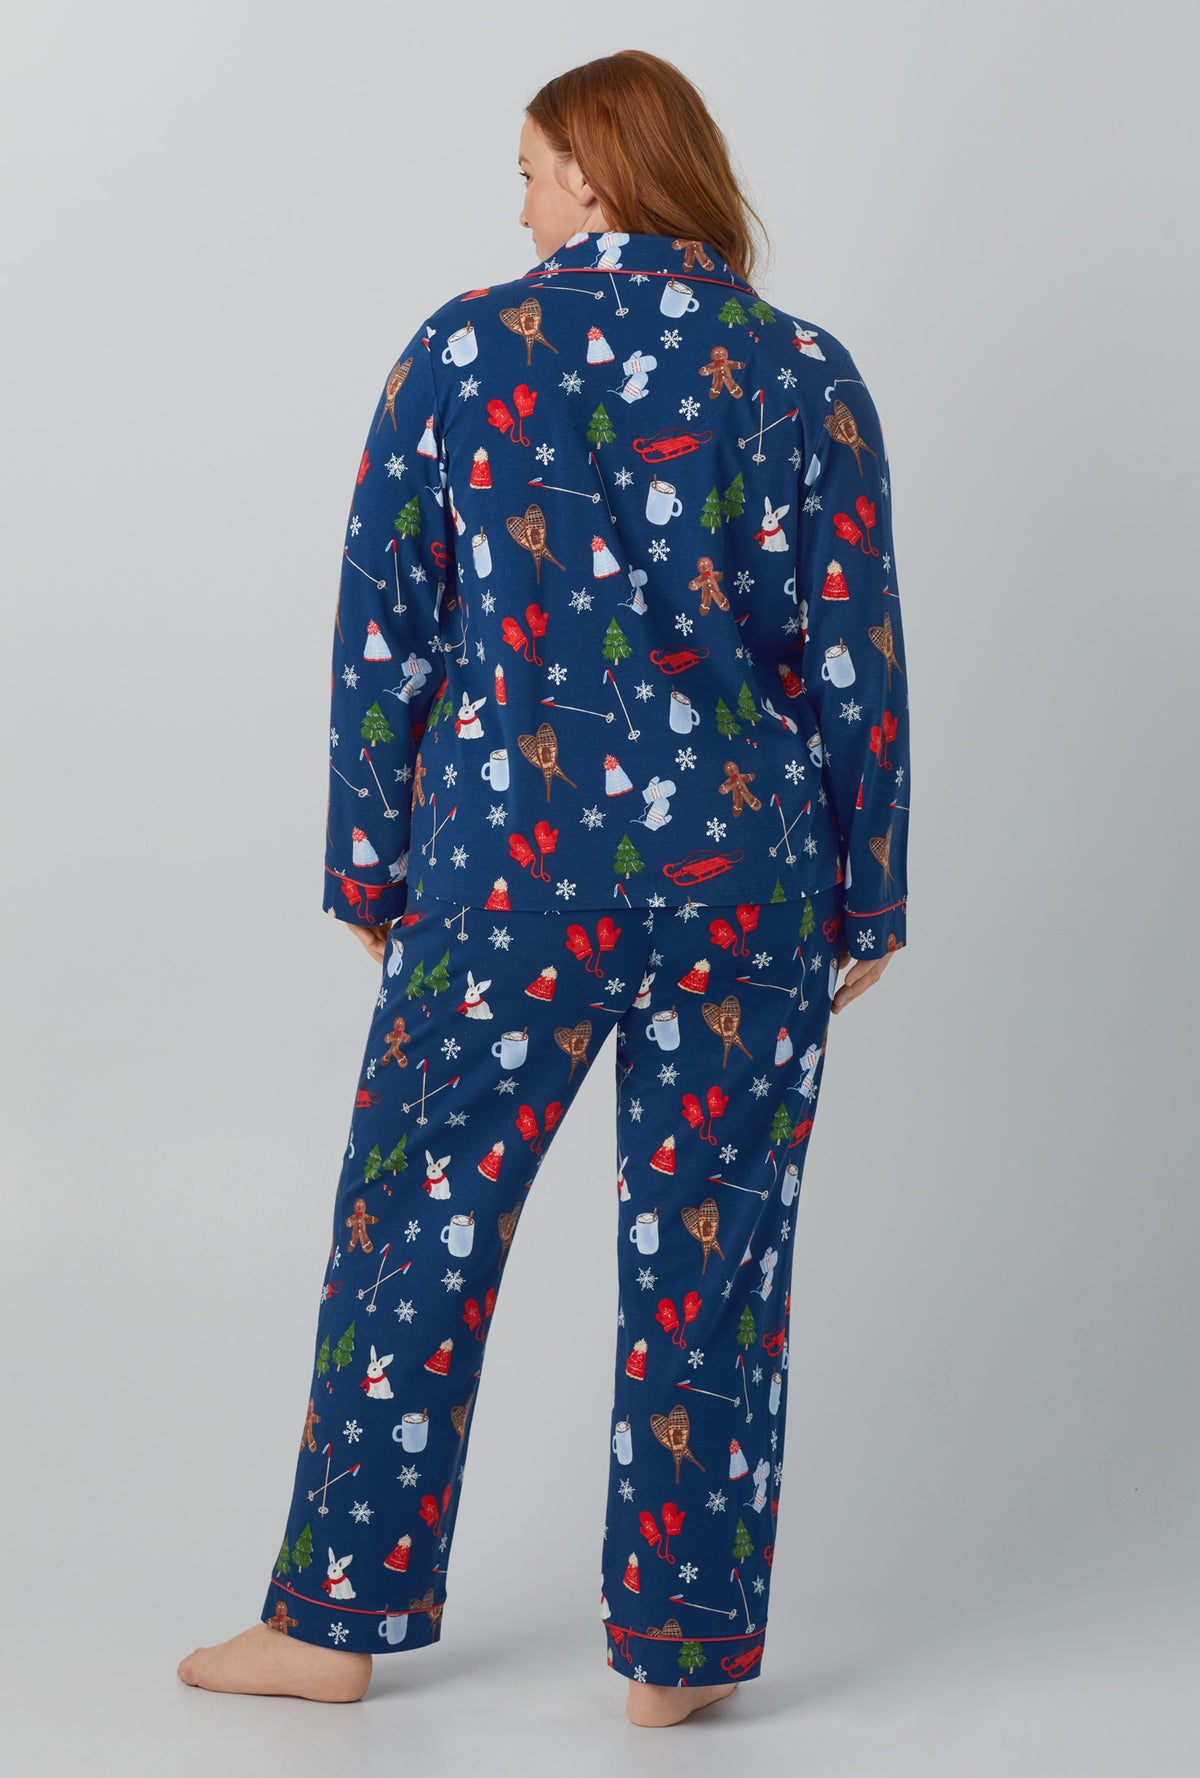 BedHead Pajamas Family Matching Seasonal Delight Jersey Knit Notch